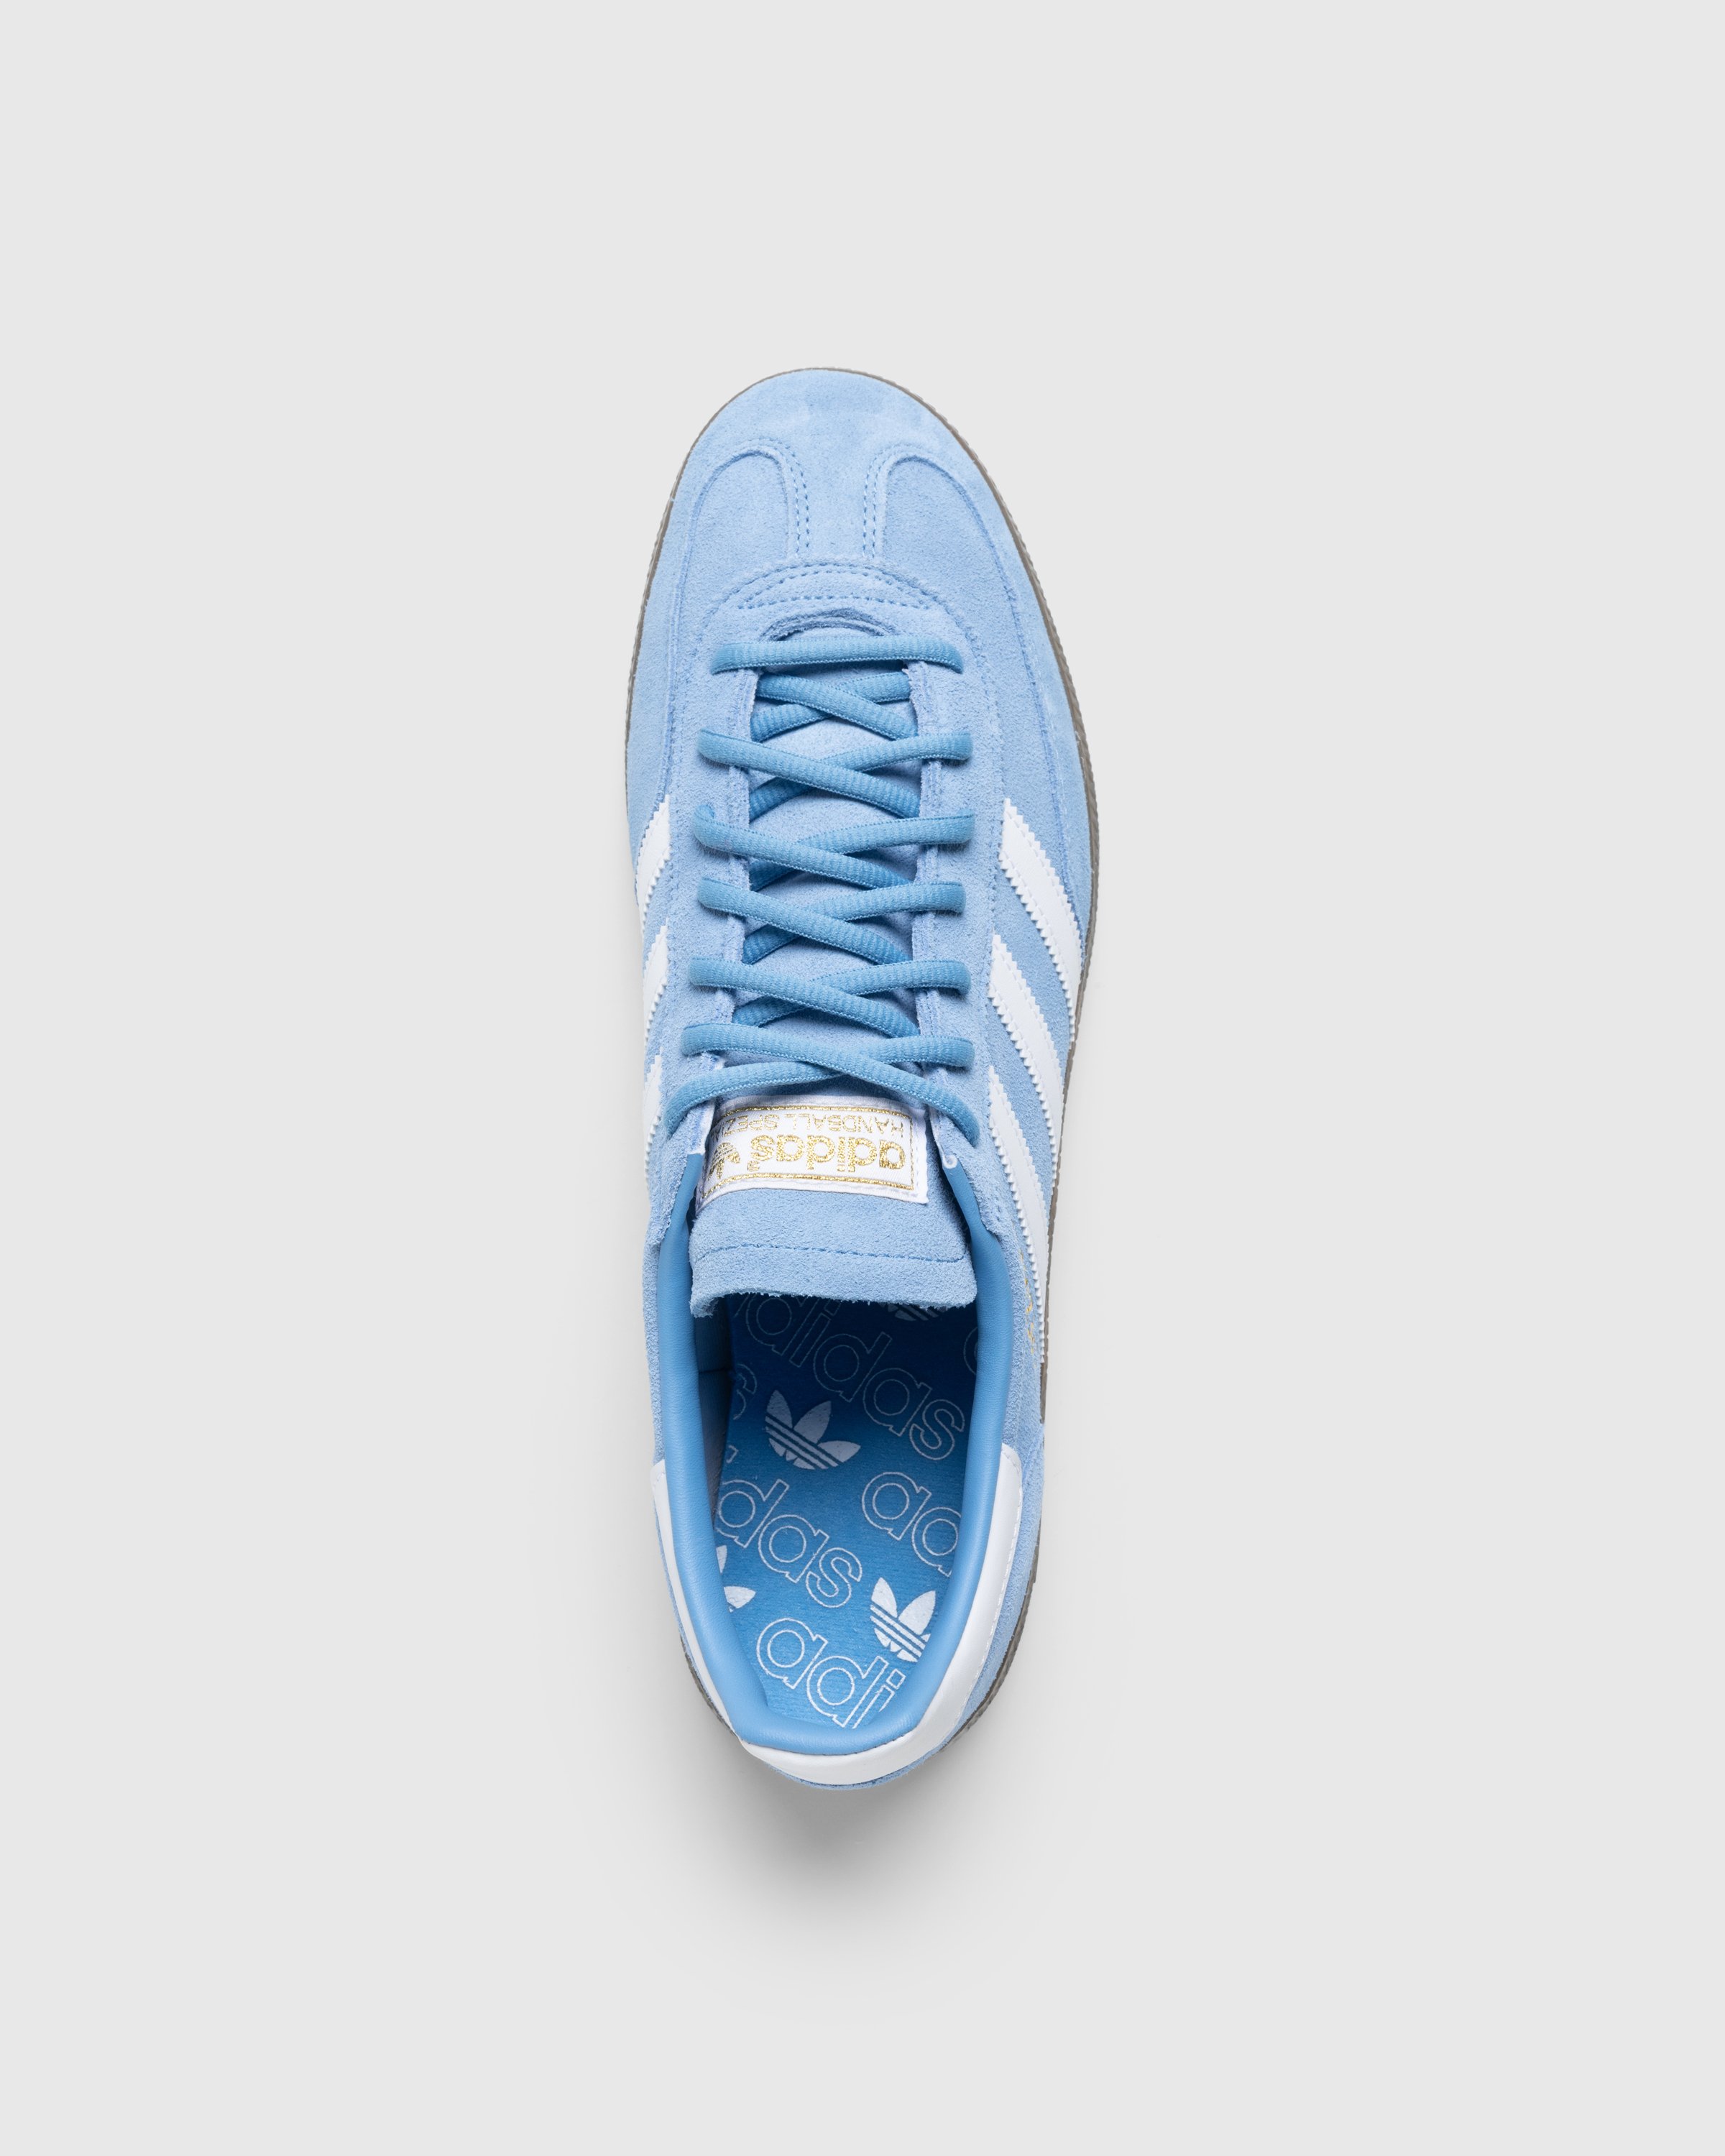 Adidas - Handball Spezial    Ltblue/Ftwwht/Gum5 - Footwear - Blue - Image 5